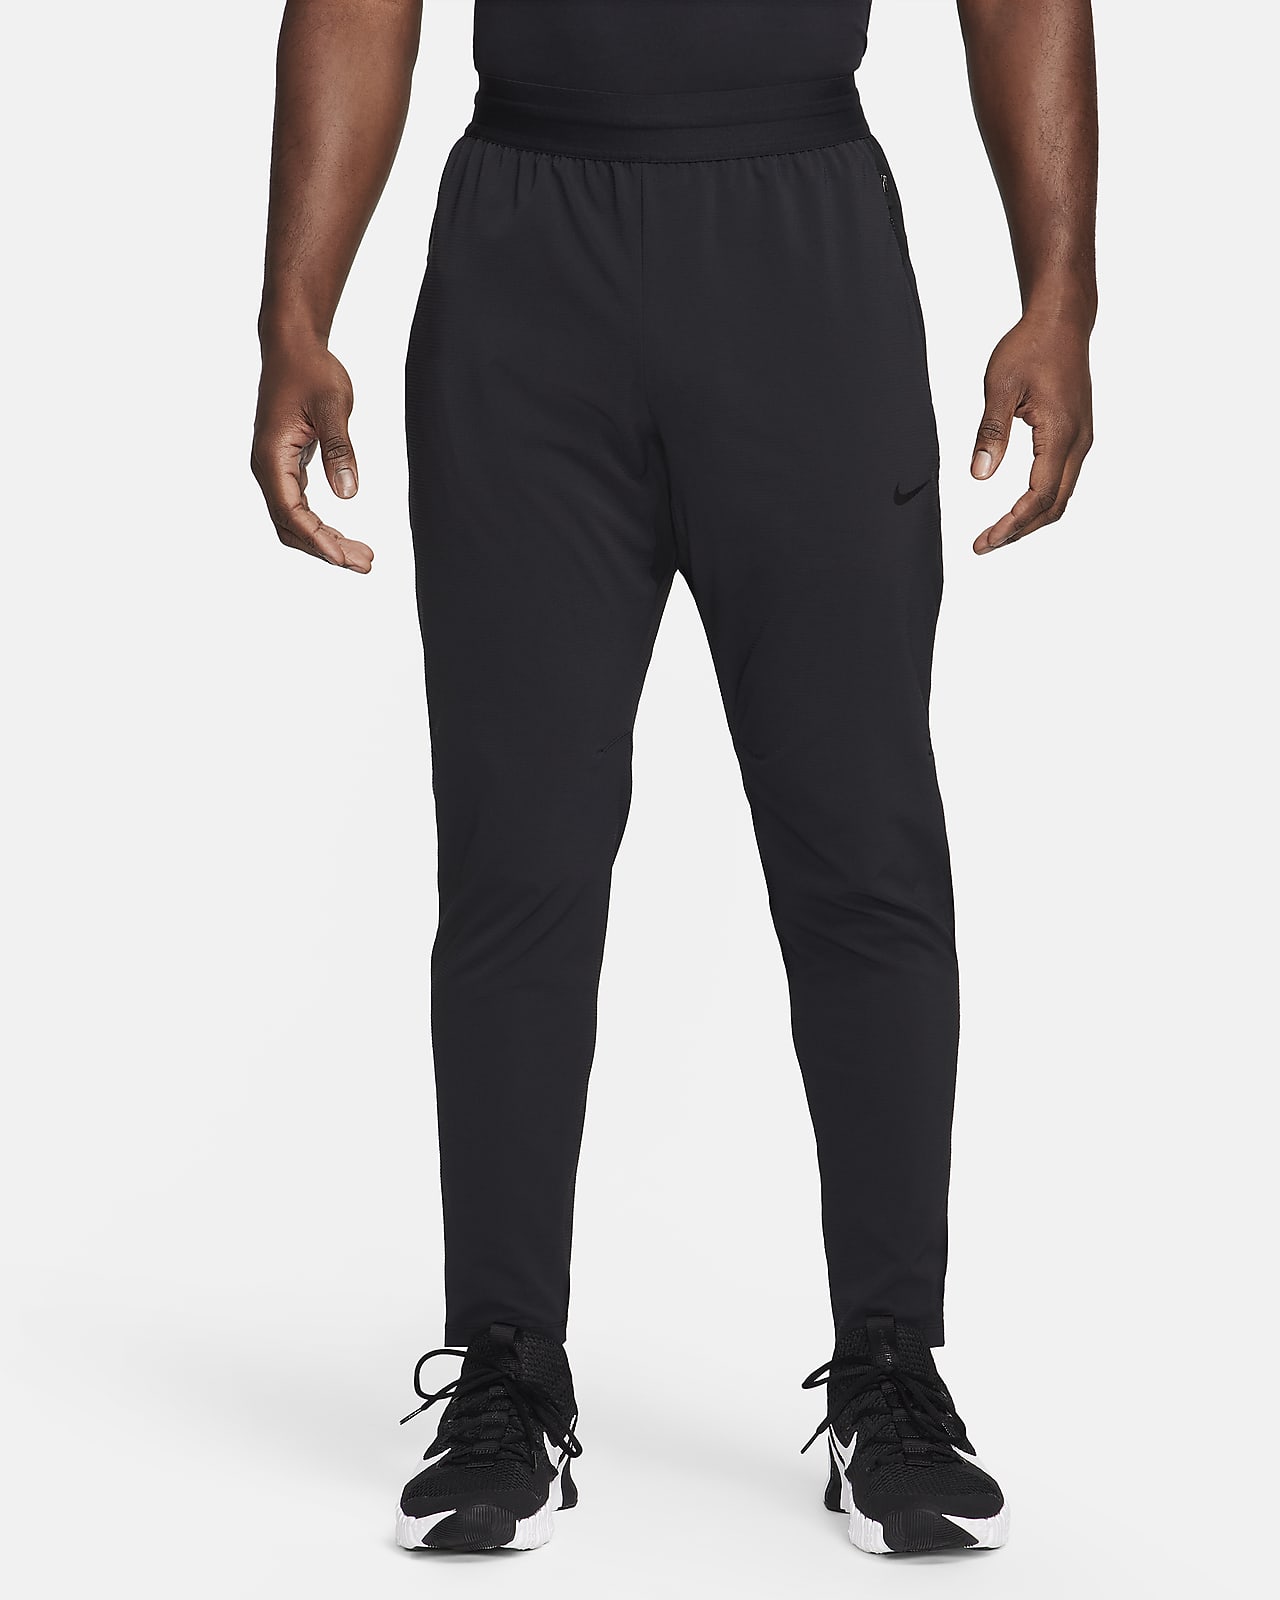 Ανδρικό παντελόνι fitness Dri-FIT Nike Flex Rep